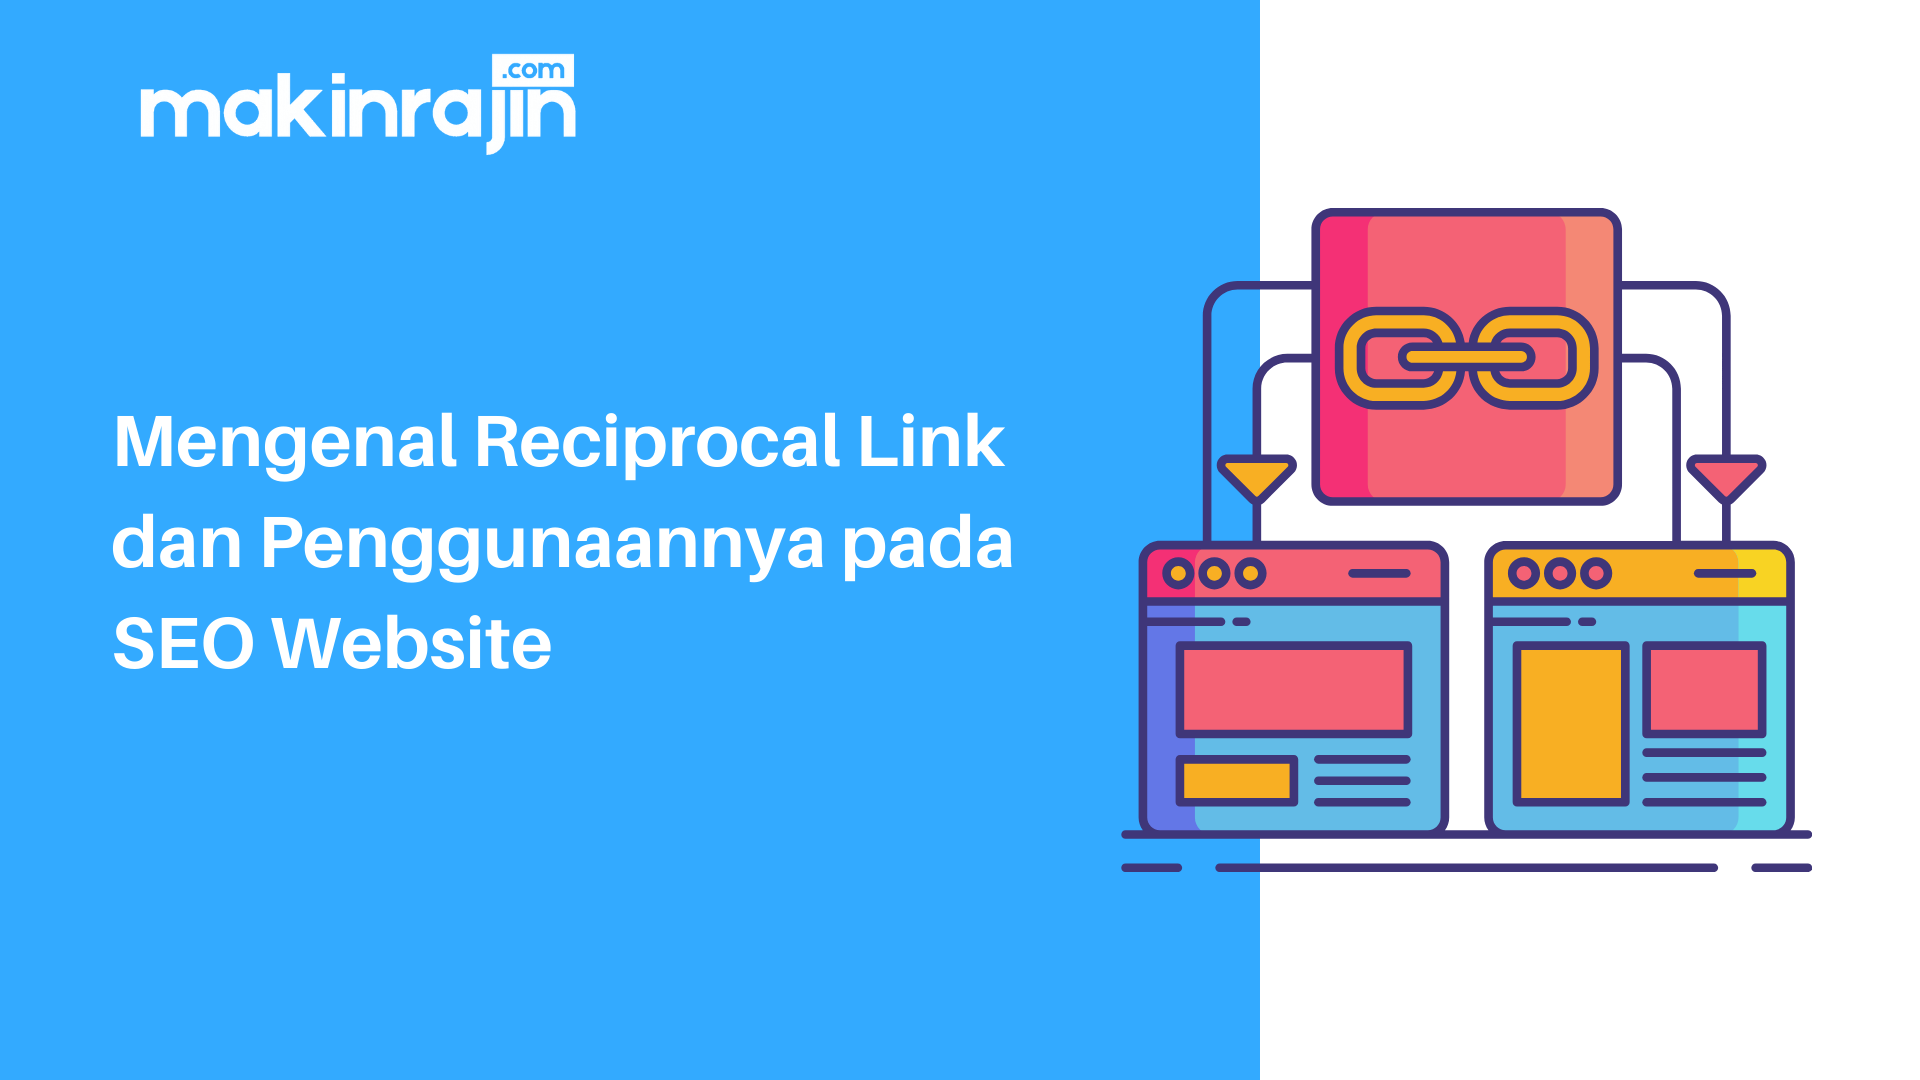 Mengenal Reciprocal Link dan Penggunaannya pada SEO Website